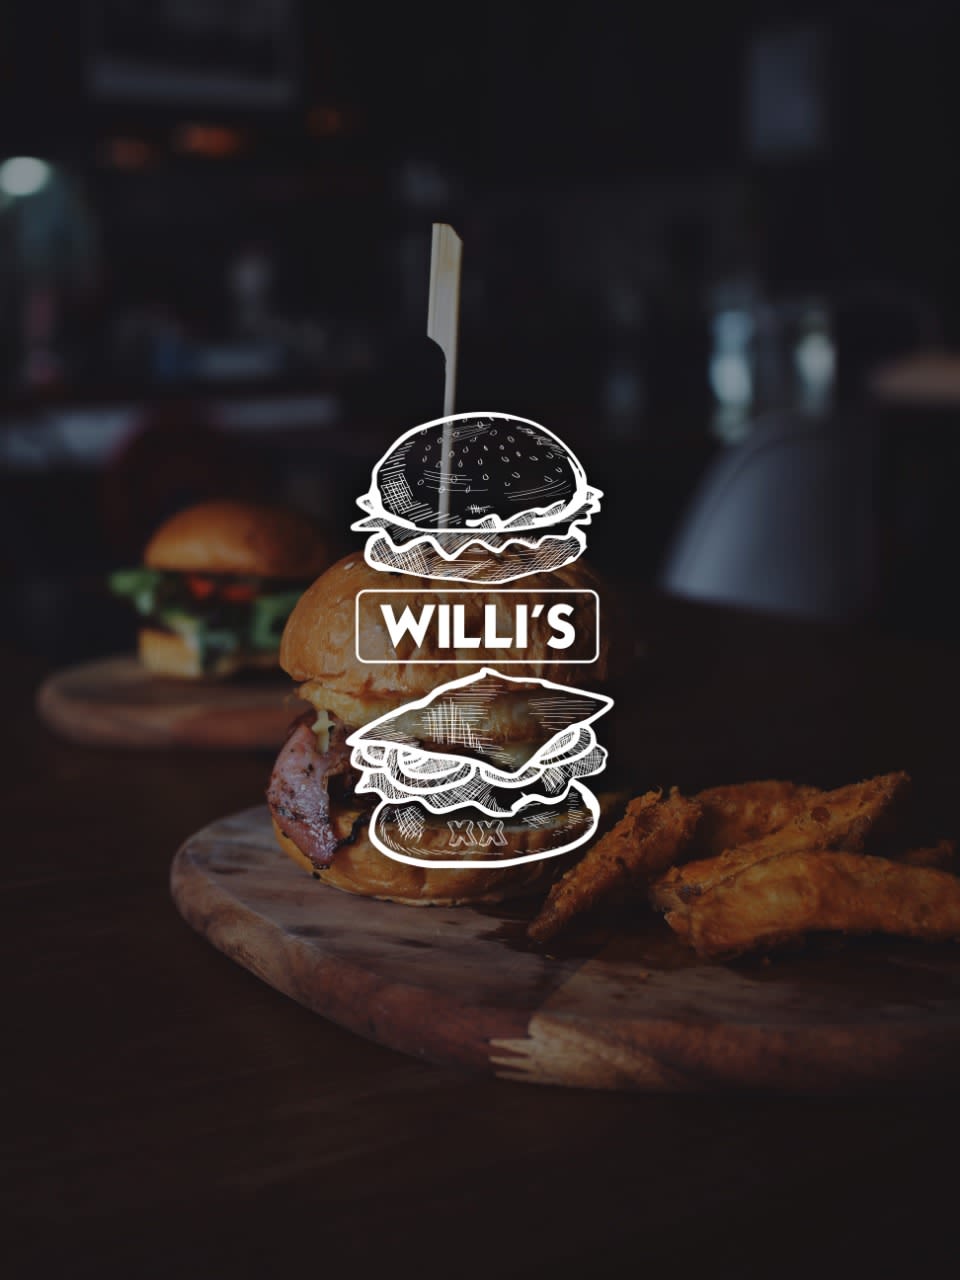 Willi’s Burger Bar